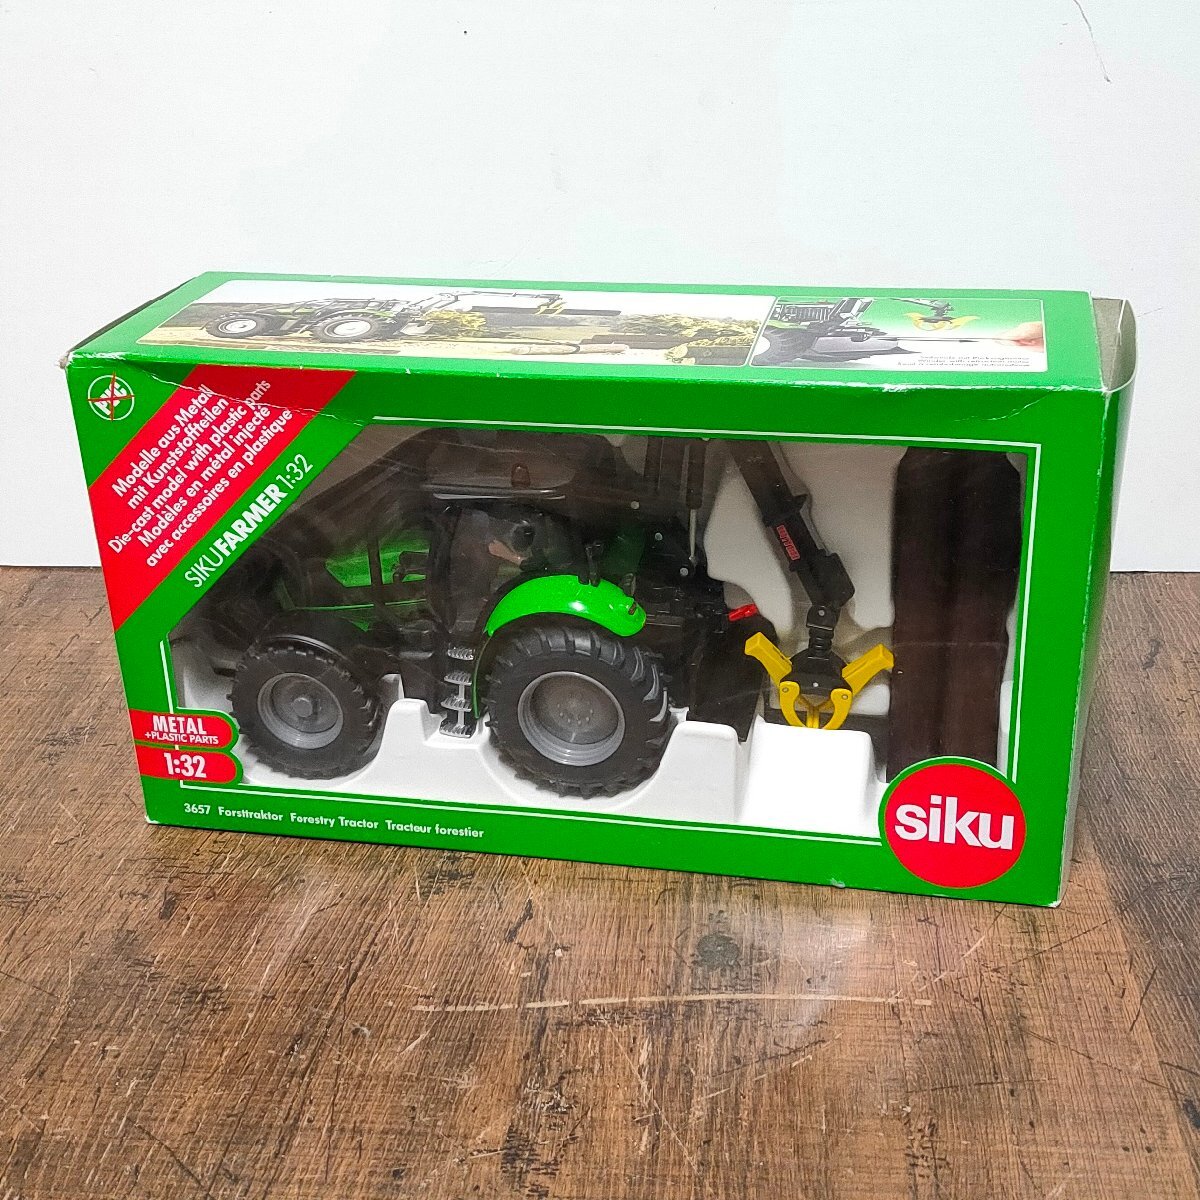 SIKU ジク 3657 Forestry Tractor 木材運搬アーム付き トラクター 1/32 ミニカー 040107/SR26Sの画像1